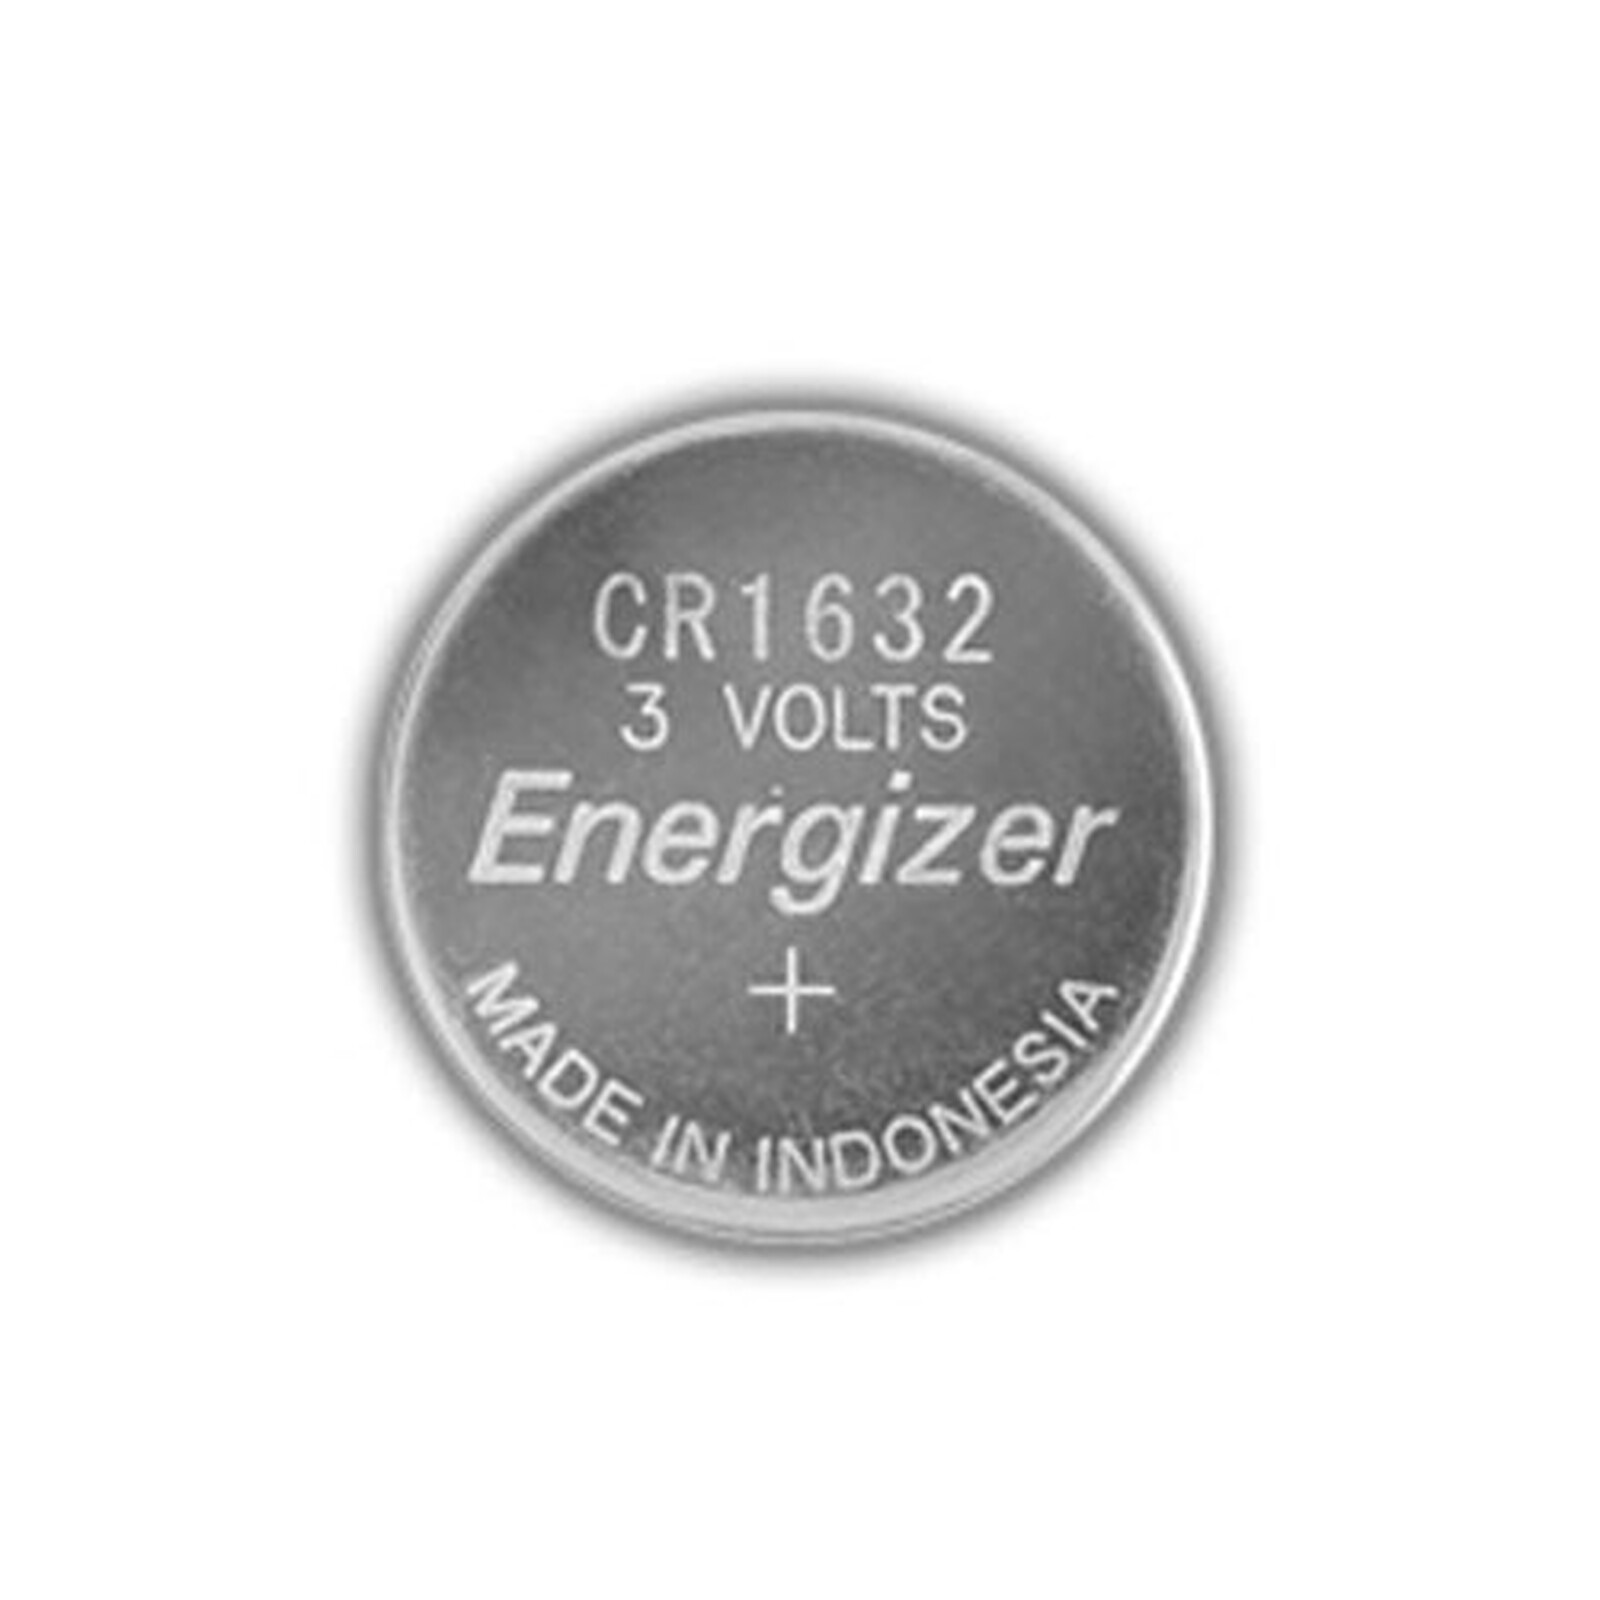 Energizer CR2430 Lithium 3V (par 2) - Pile & chargeur - LDLC